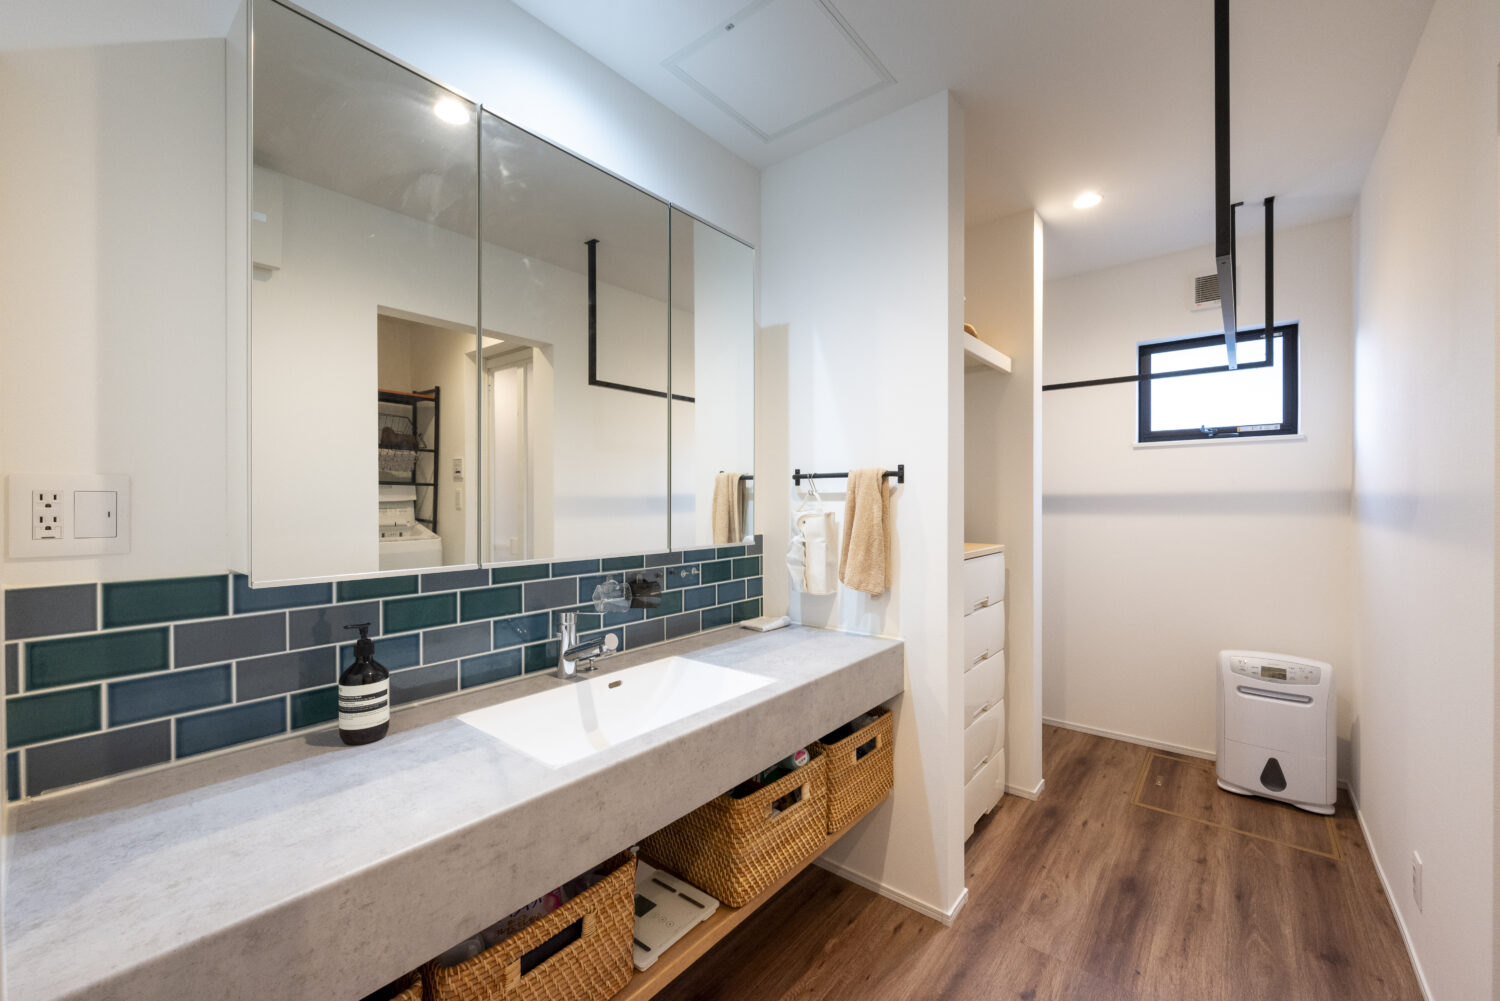 アイデザインホーム
三重の注文住宅　実例
アイカのグレーの造作洗面台をメインとした洗面室はランドリーコーナーも兼ねており、アイアンのランドリーパイプが設置してある。
収納スペースも設け、家事ラクな空間をつくっている。